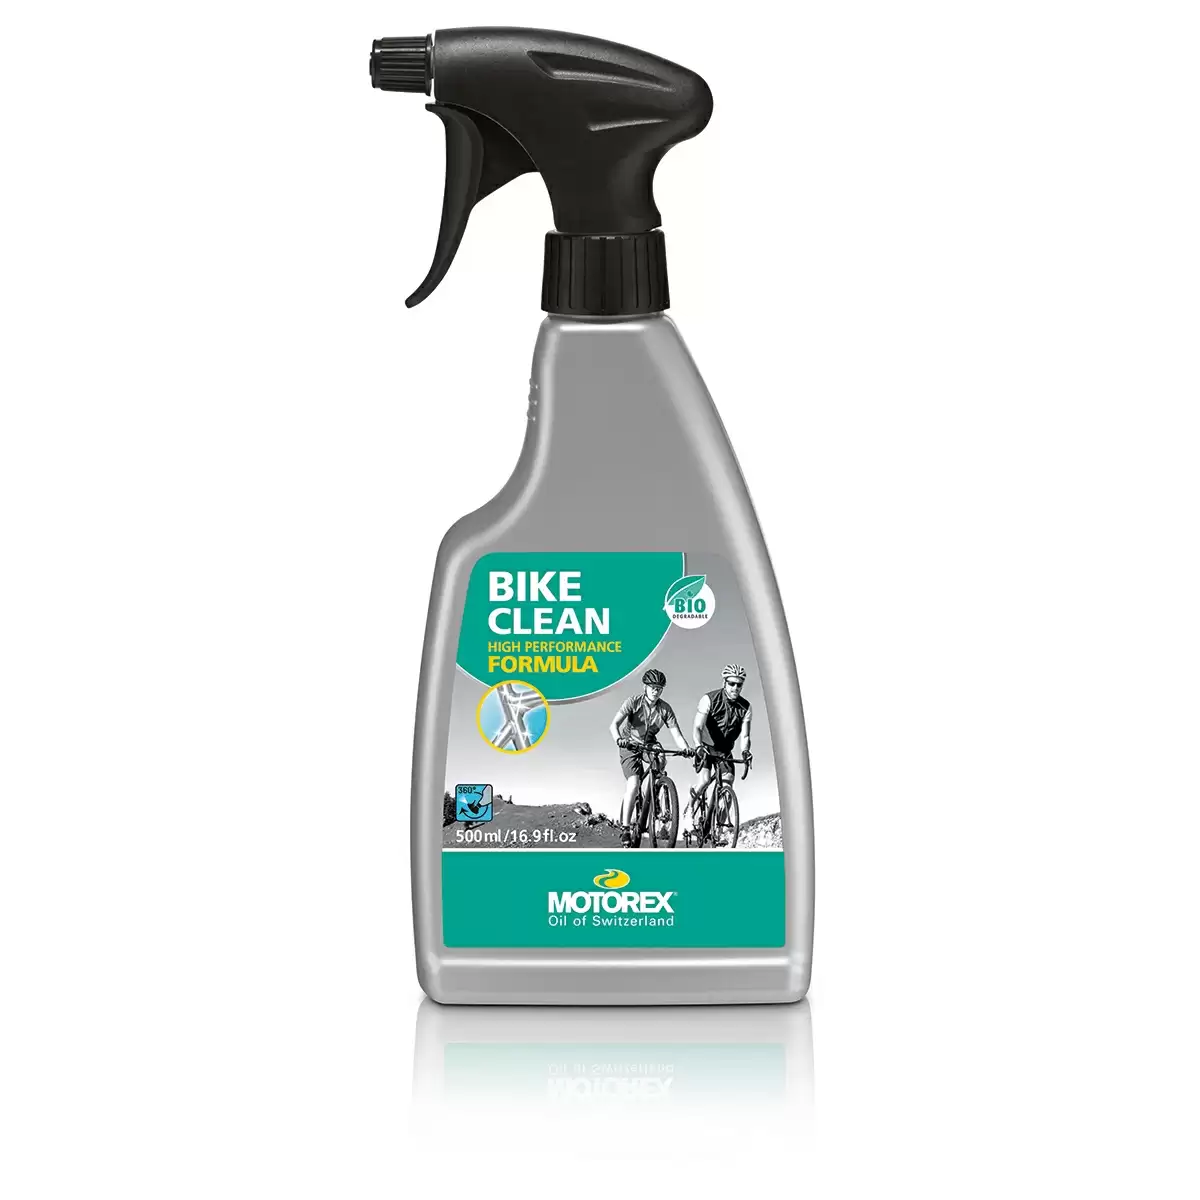 Degreaser Bike Clean biologisch abbaubares Spray 500ml - image